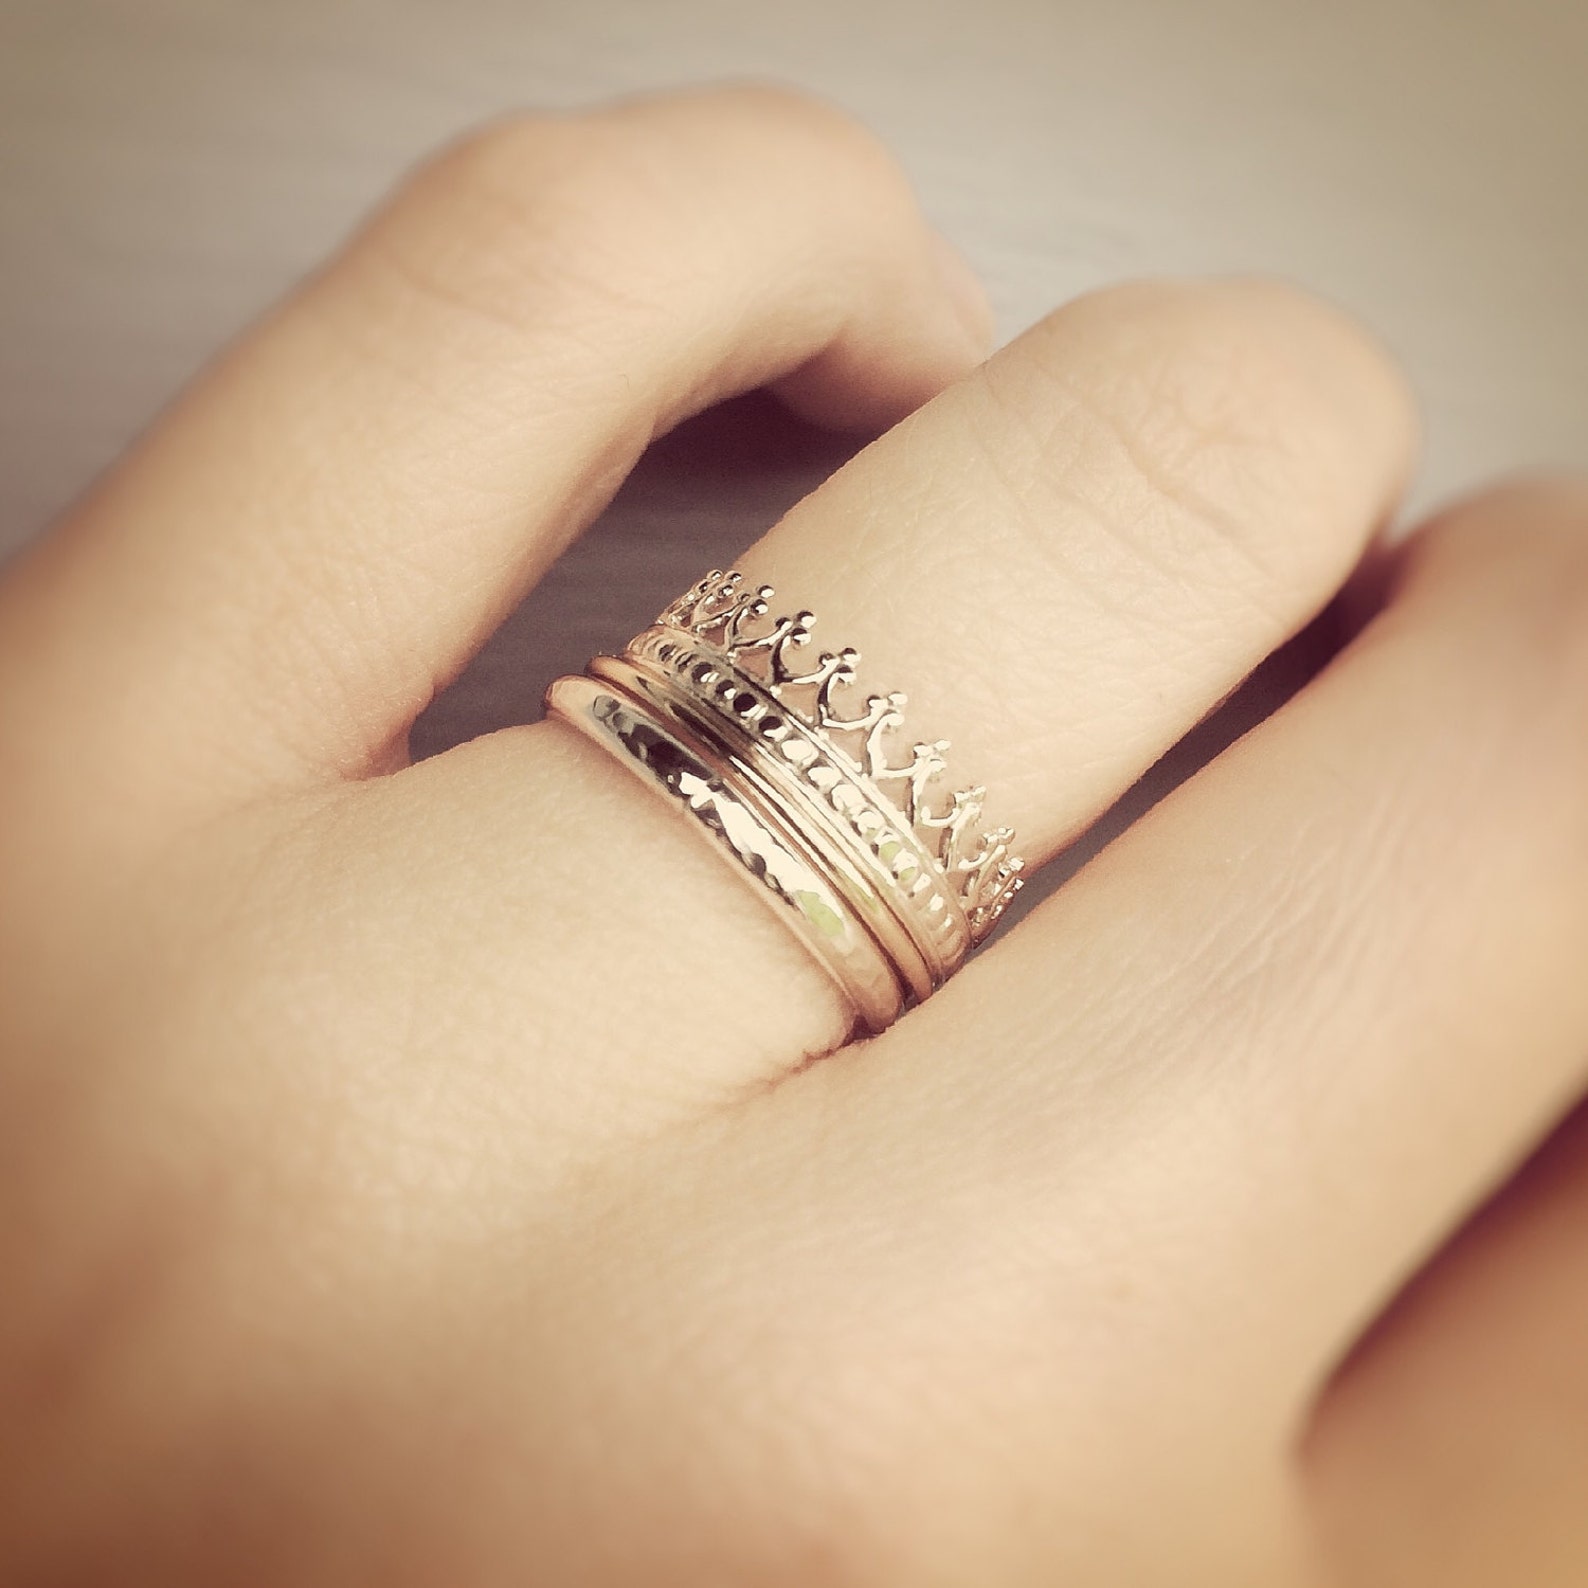 Красивое кольцо на палец